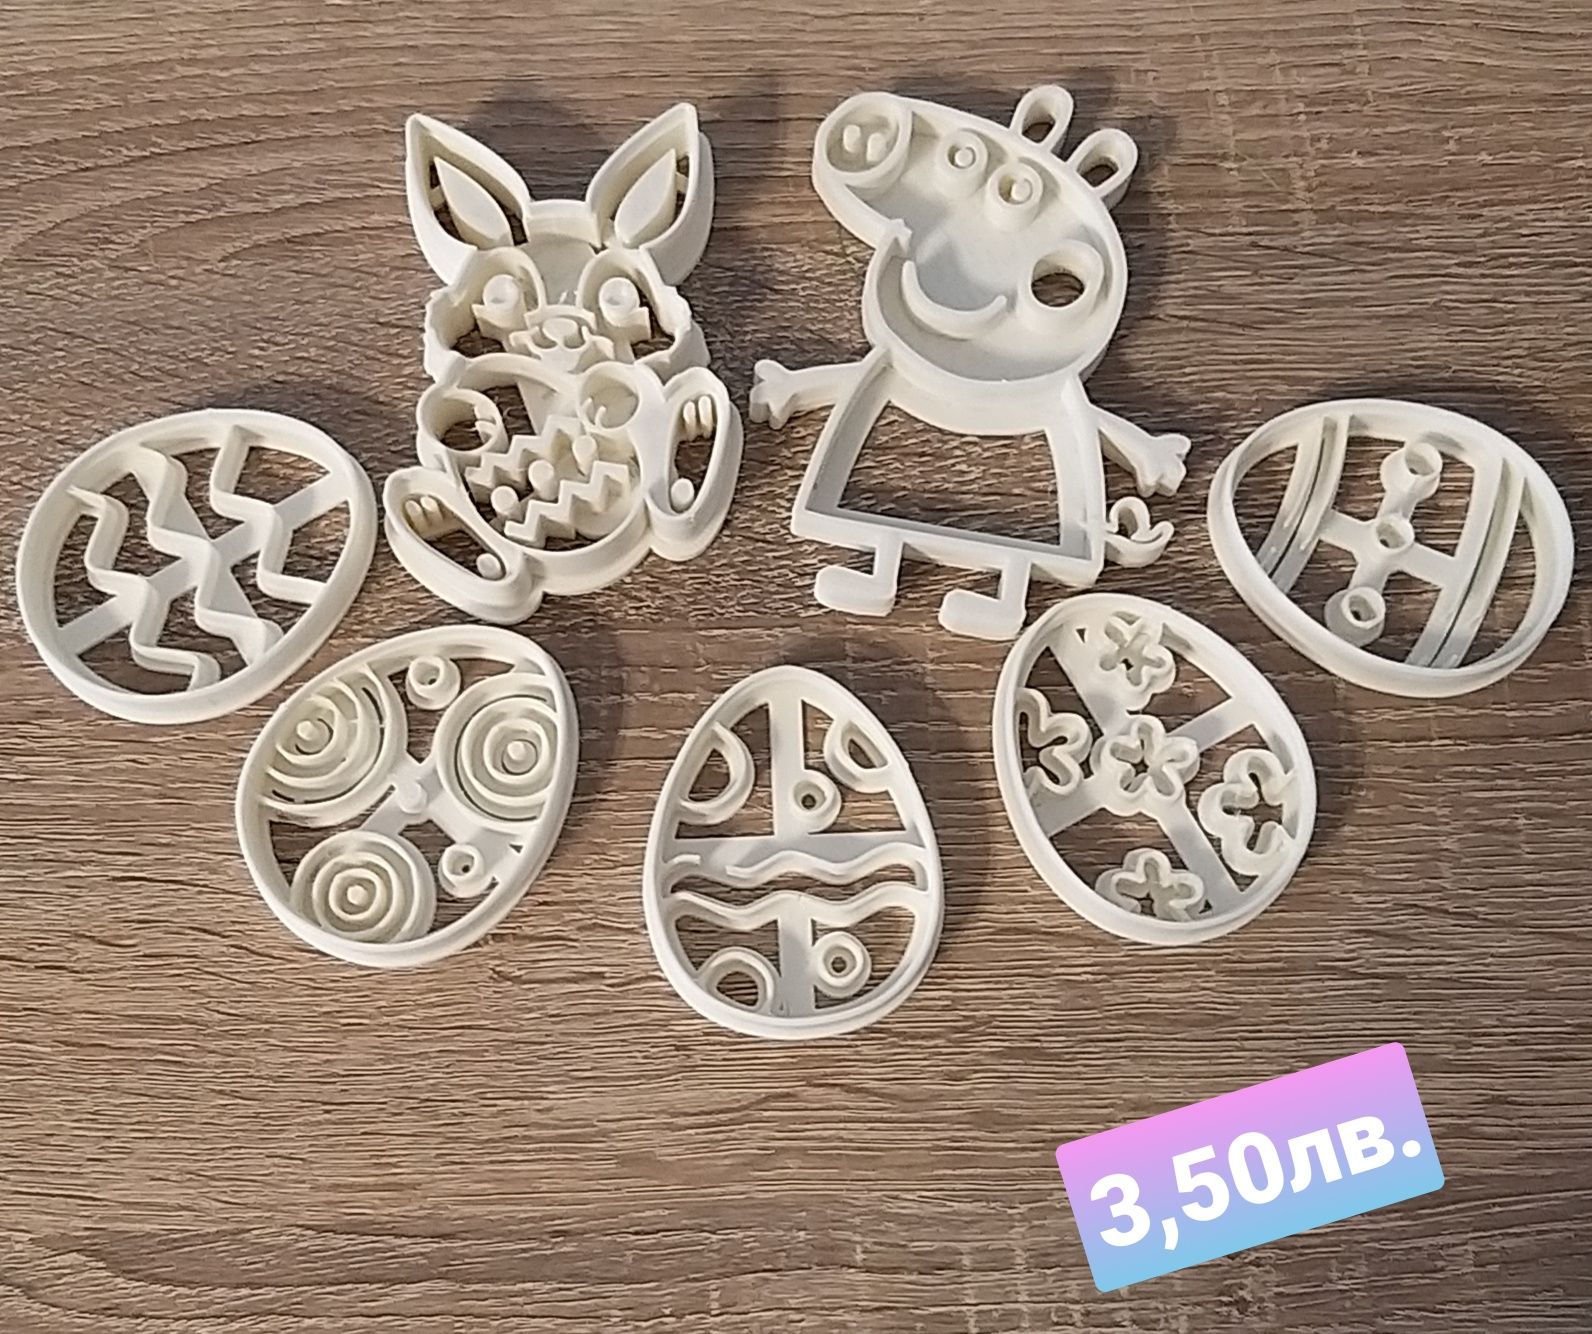 Фигурки за сладки изработени на 3D принтер